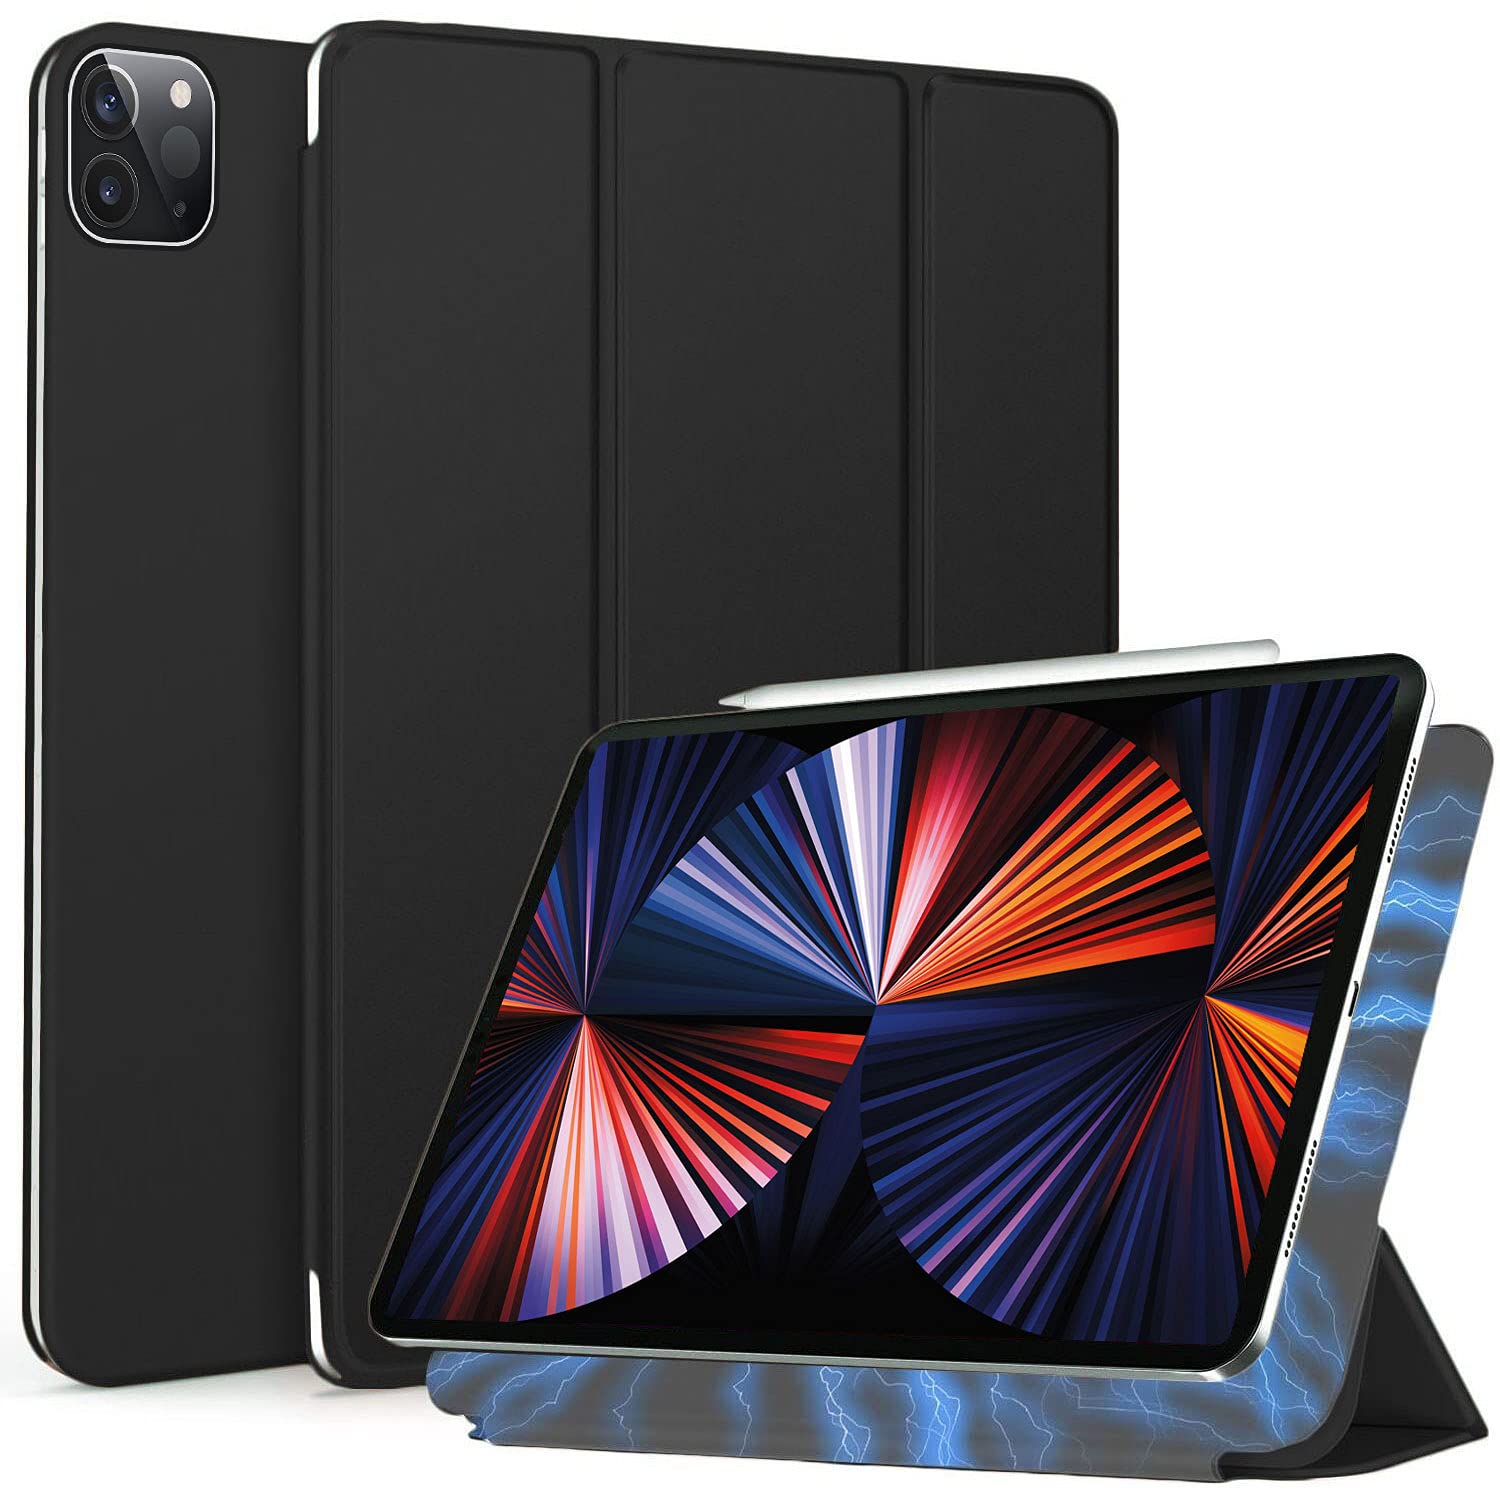 Arktis iPad Pro Hülle, magnetisches Smart Case kompatibel mit iPad Pro 12,9" (2021) [Sleep & Wake-Up-Funktion] Schutzhülle Smart Cover Case schwarz